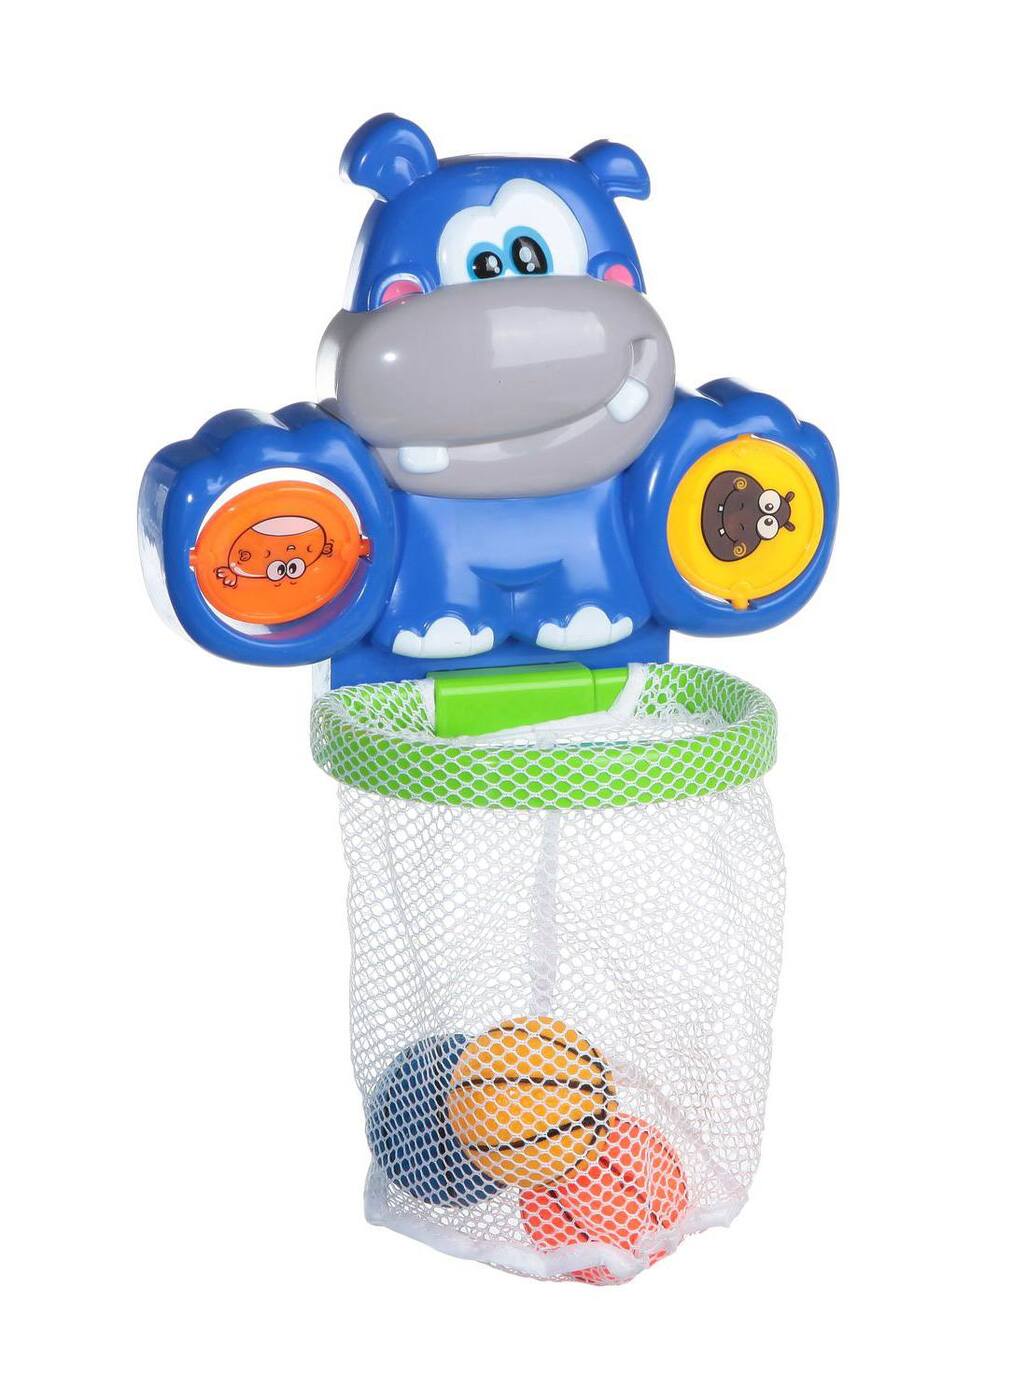 Веселое купание. Игрушка для ванной Chicco Бегемотик. Набор для ванны "веселое купание" (Пеликан). Баскетбольный набор для игр на воде Bestway 52190 BW. Водная игрушки.